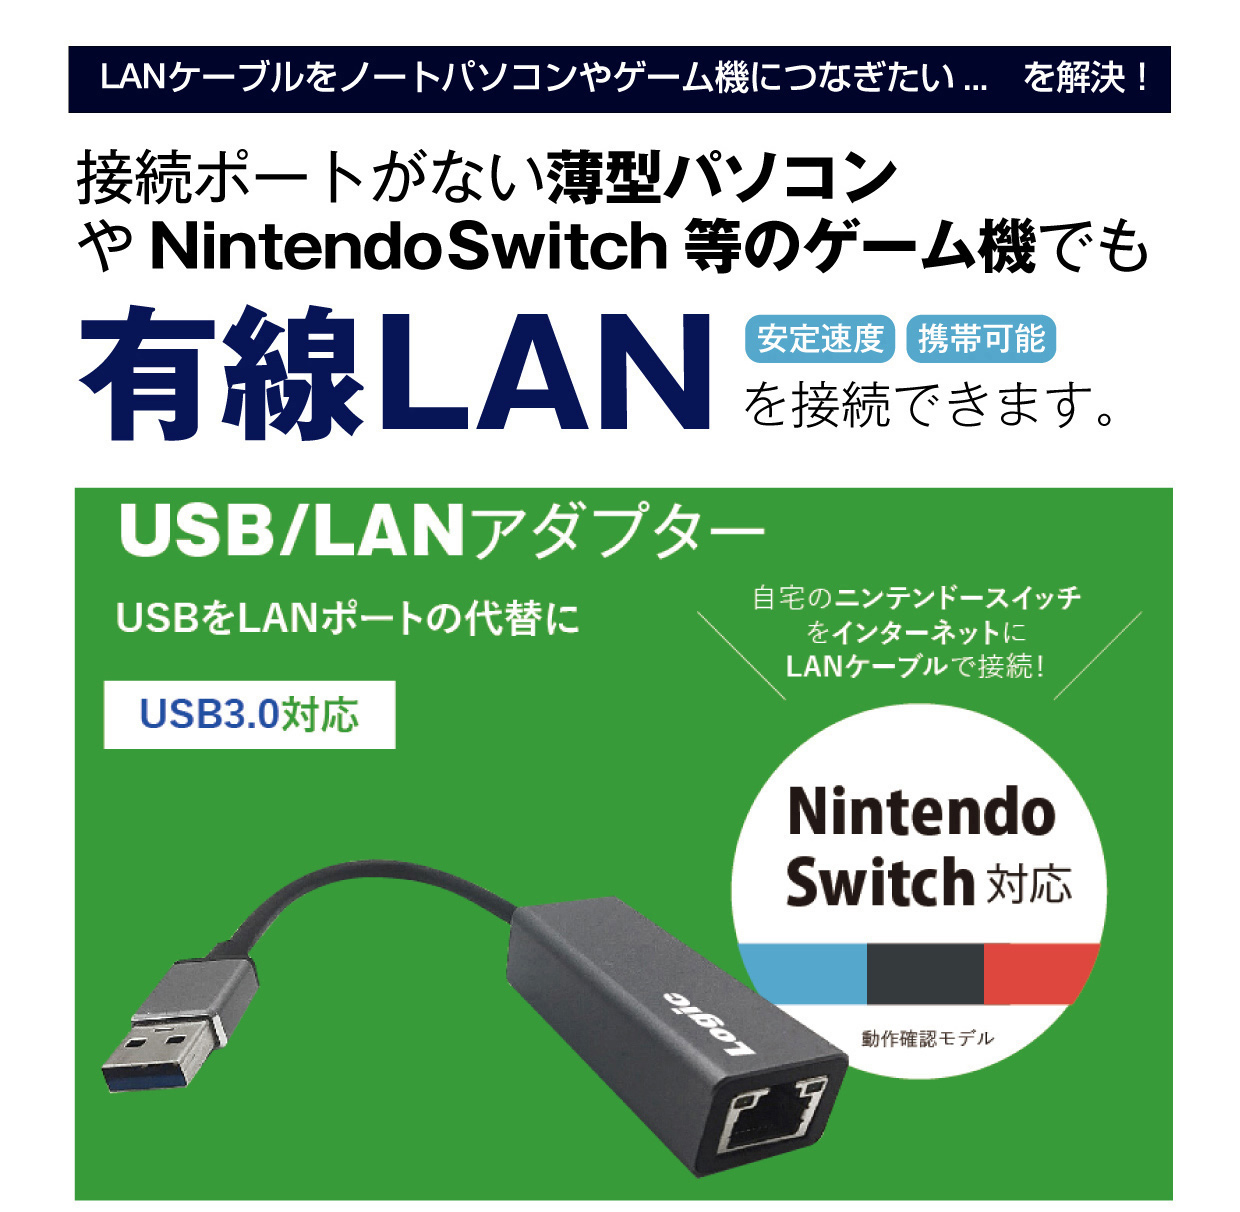 接続ポートがない薄型パソコンやニンテンドウスイッチでも有線LANに接続できます。